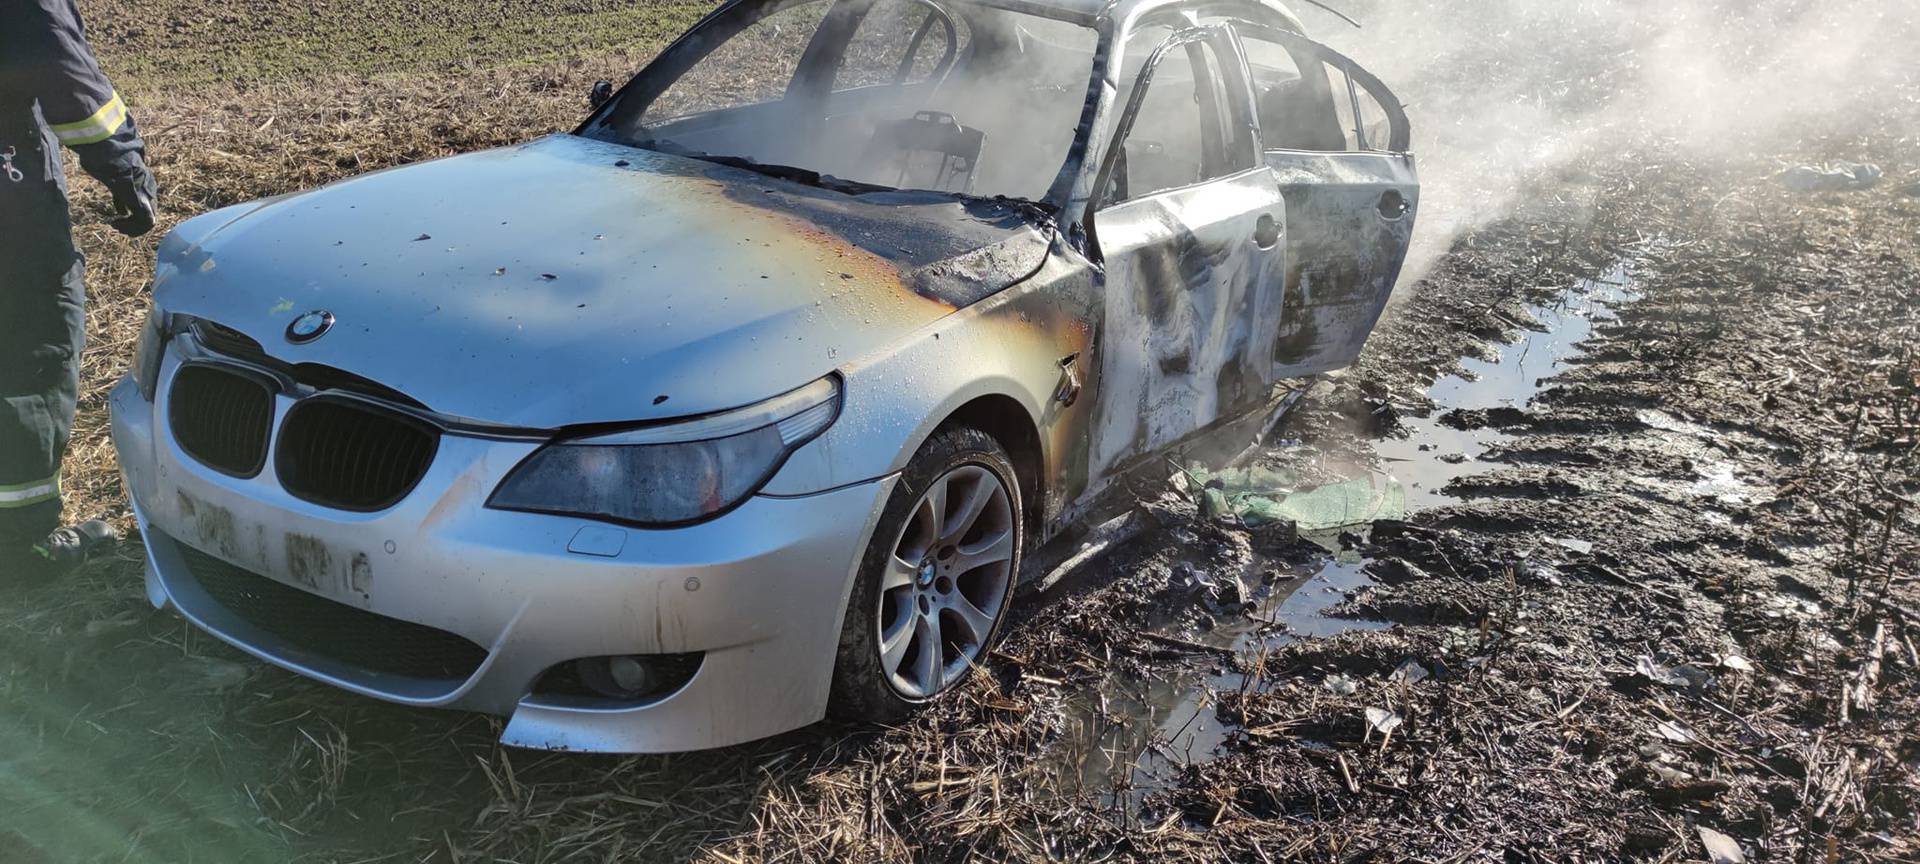 Zapalio svoj BMW, odvezao ga u blatno polje i pustio da izgori...